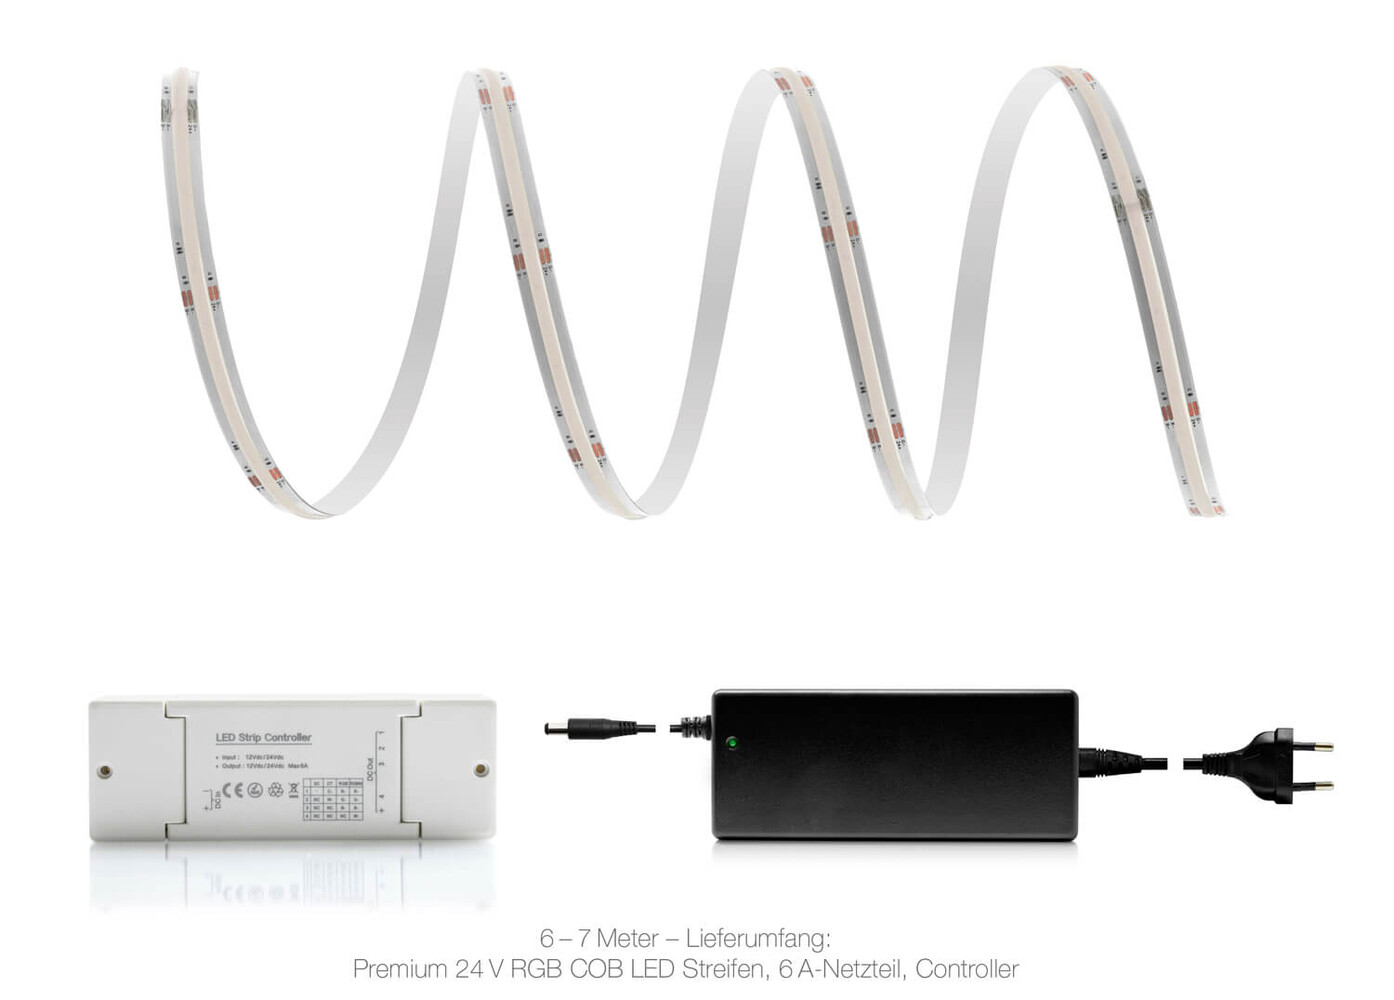 Hochwertige Premium 24V RGB COB LED Streifen von LED Universum für ein farbenfrohes Smart Home